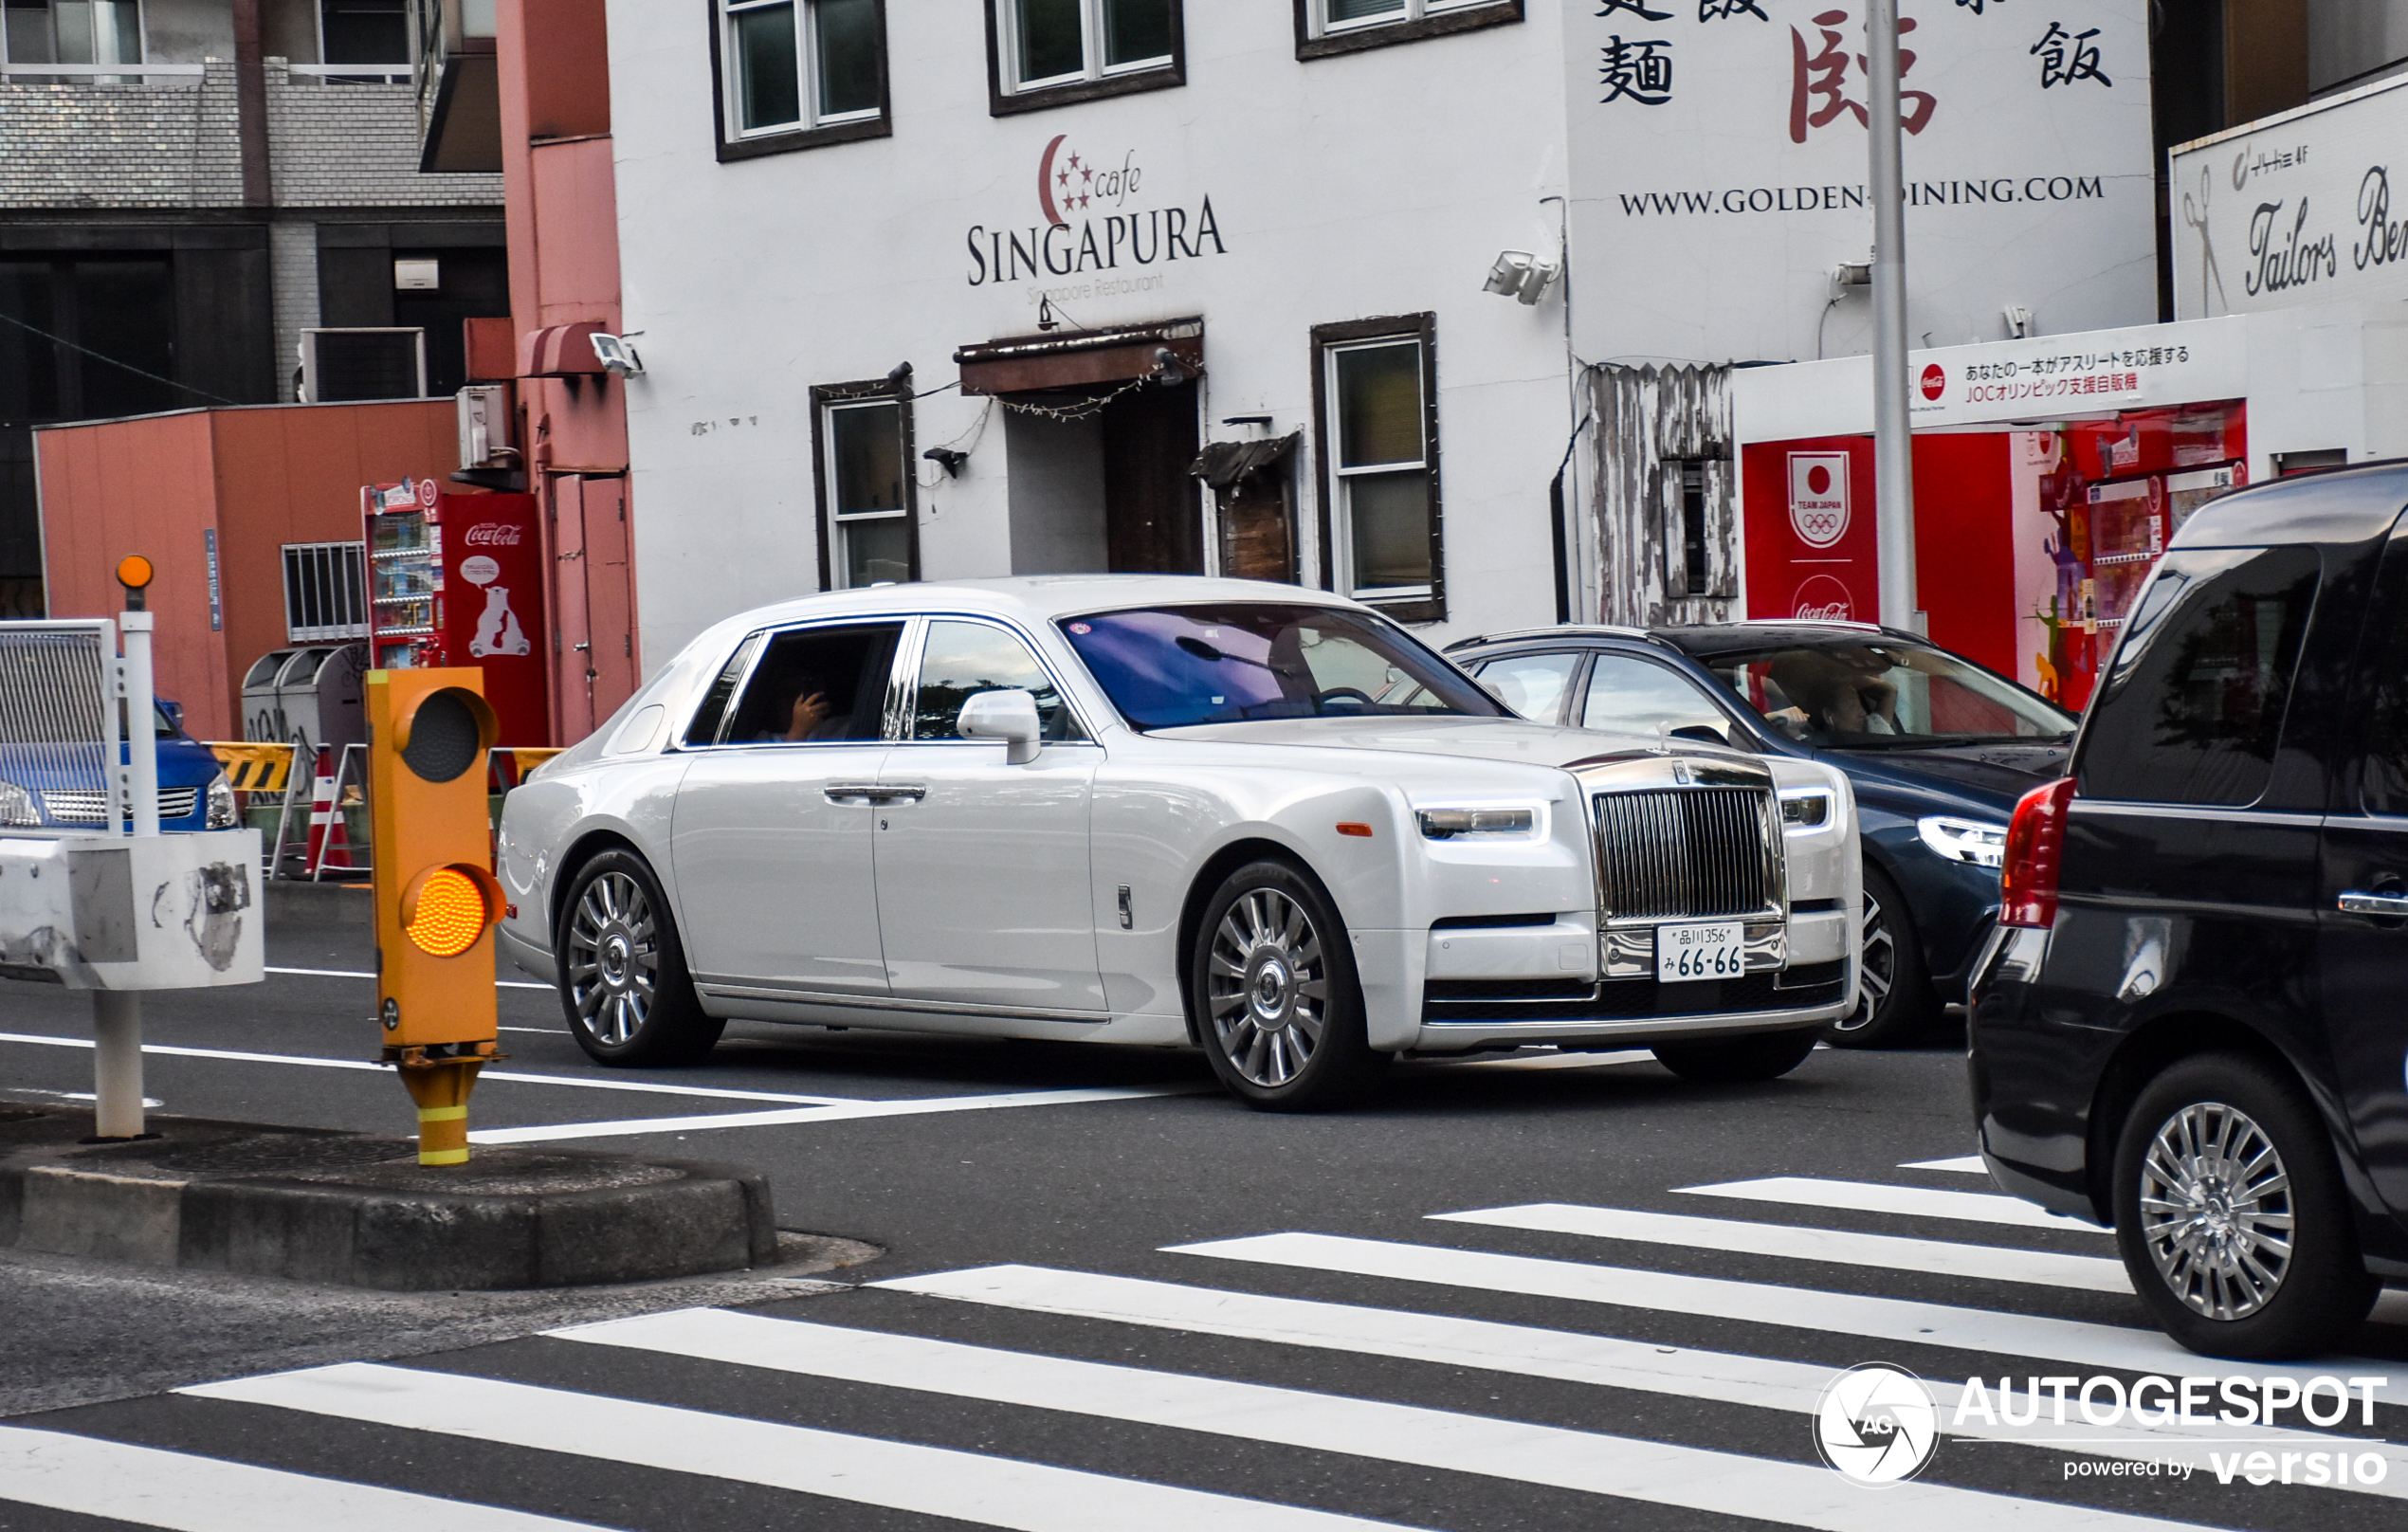 Der strahlend weiße Rolls-Royce Phantom zieht alle Blicke auf sich.